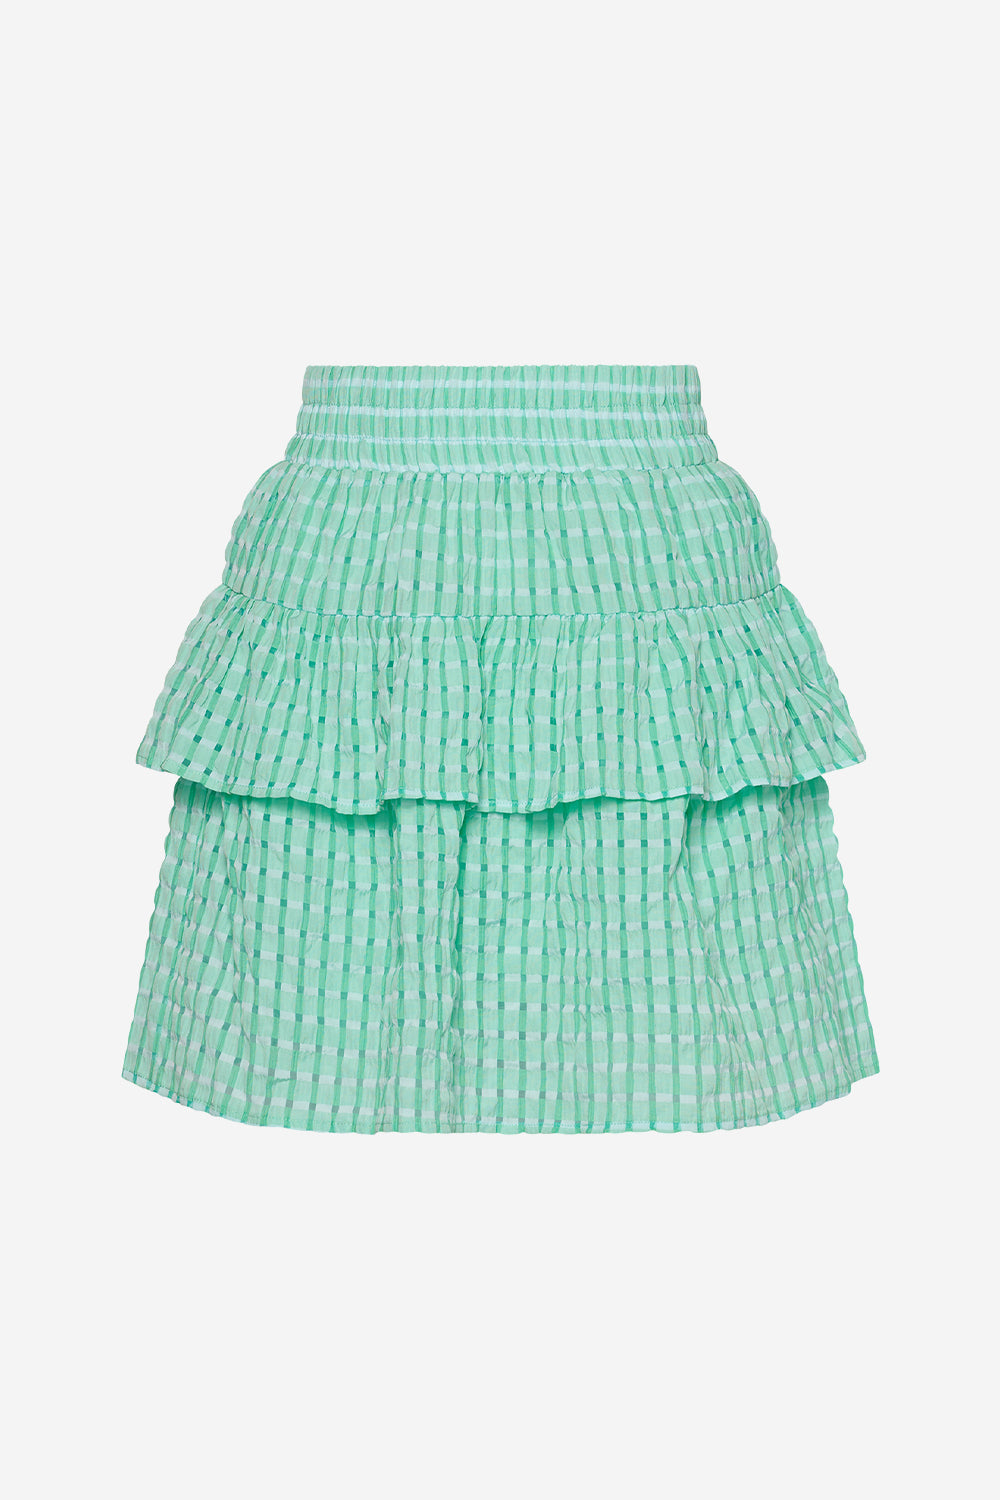 Dicte Mona Skirt Green